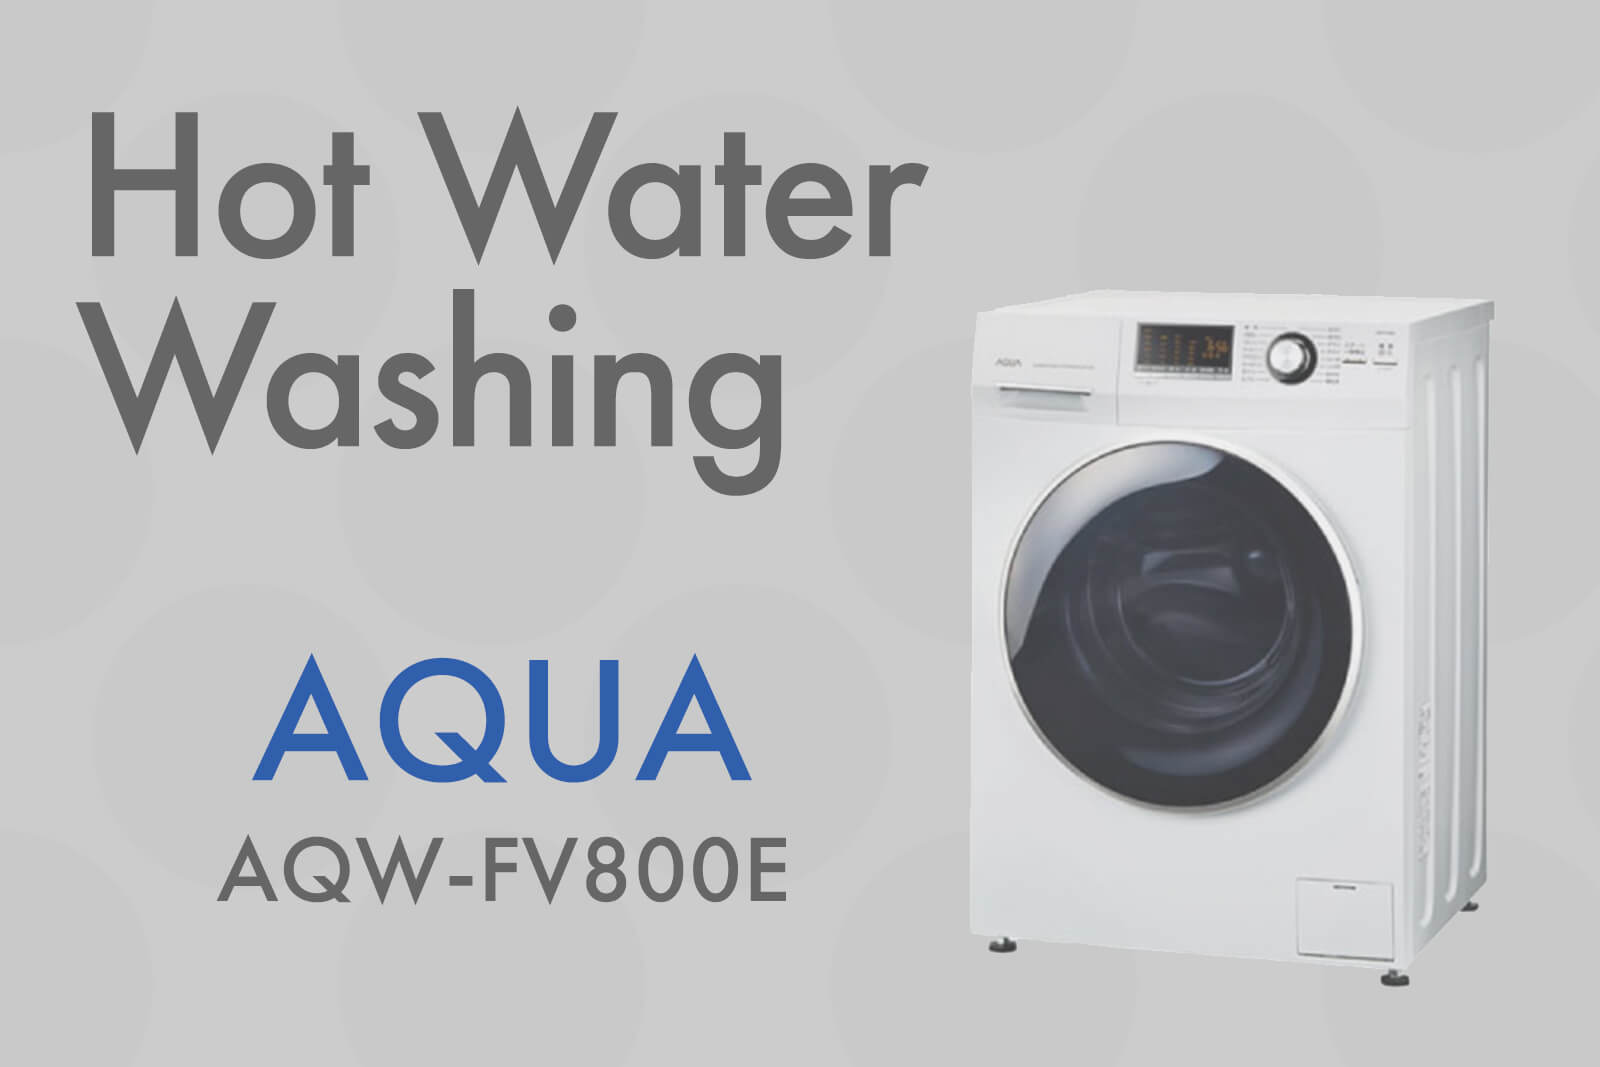 AQUAからデザイン重視のドラム式洗濯機「AQW-FV800E」が発売されました 